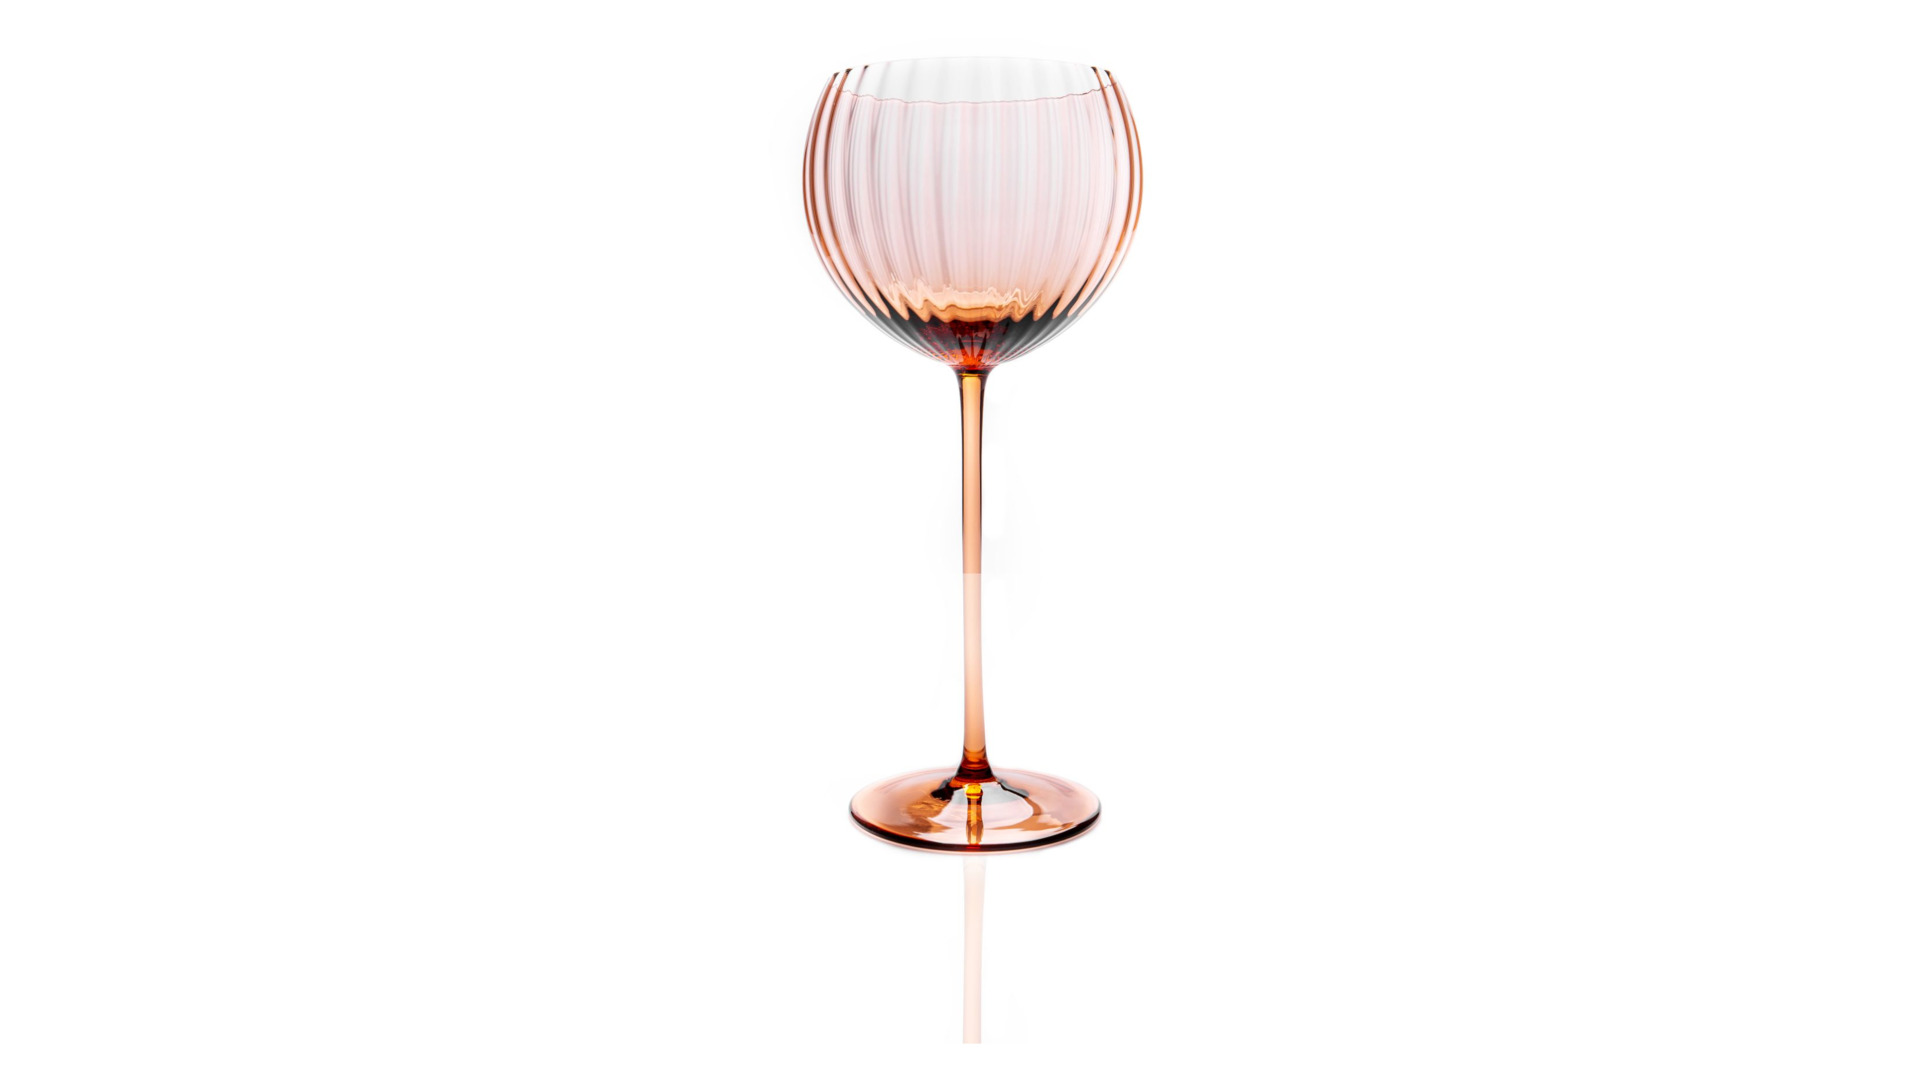 Набор бокалов для красного вина Anna Von Lipa Лион 580 мл, 2 шт, стекло хрустальное, кофейный